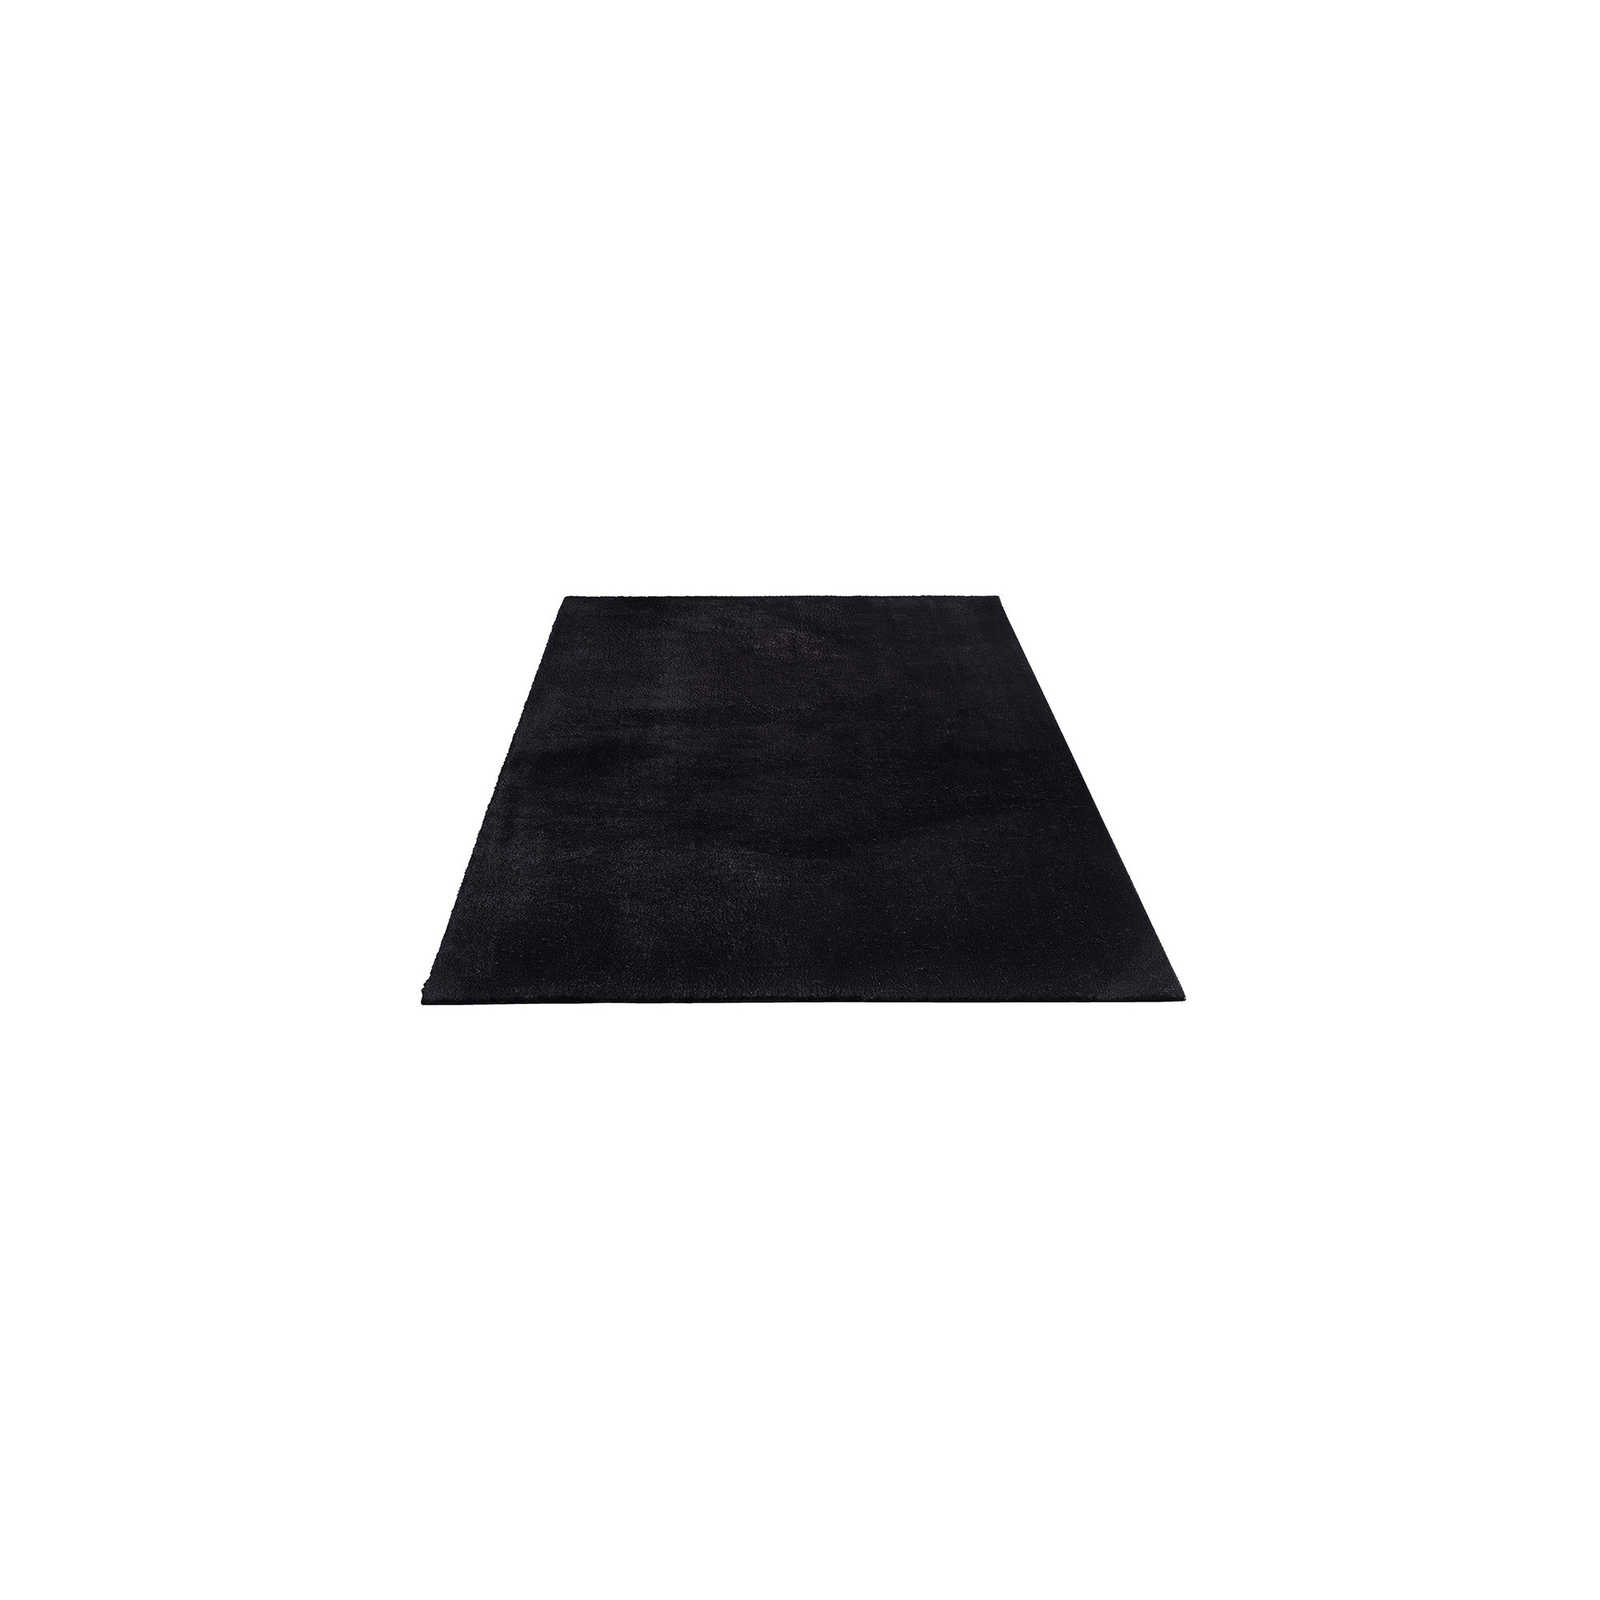 Fluweelzacht hoogpolig tapijt in zwart - 170 x 120 cm
